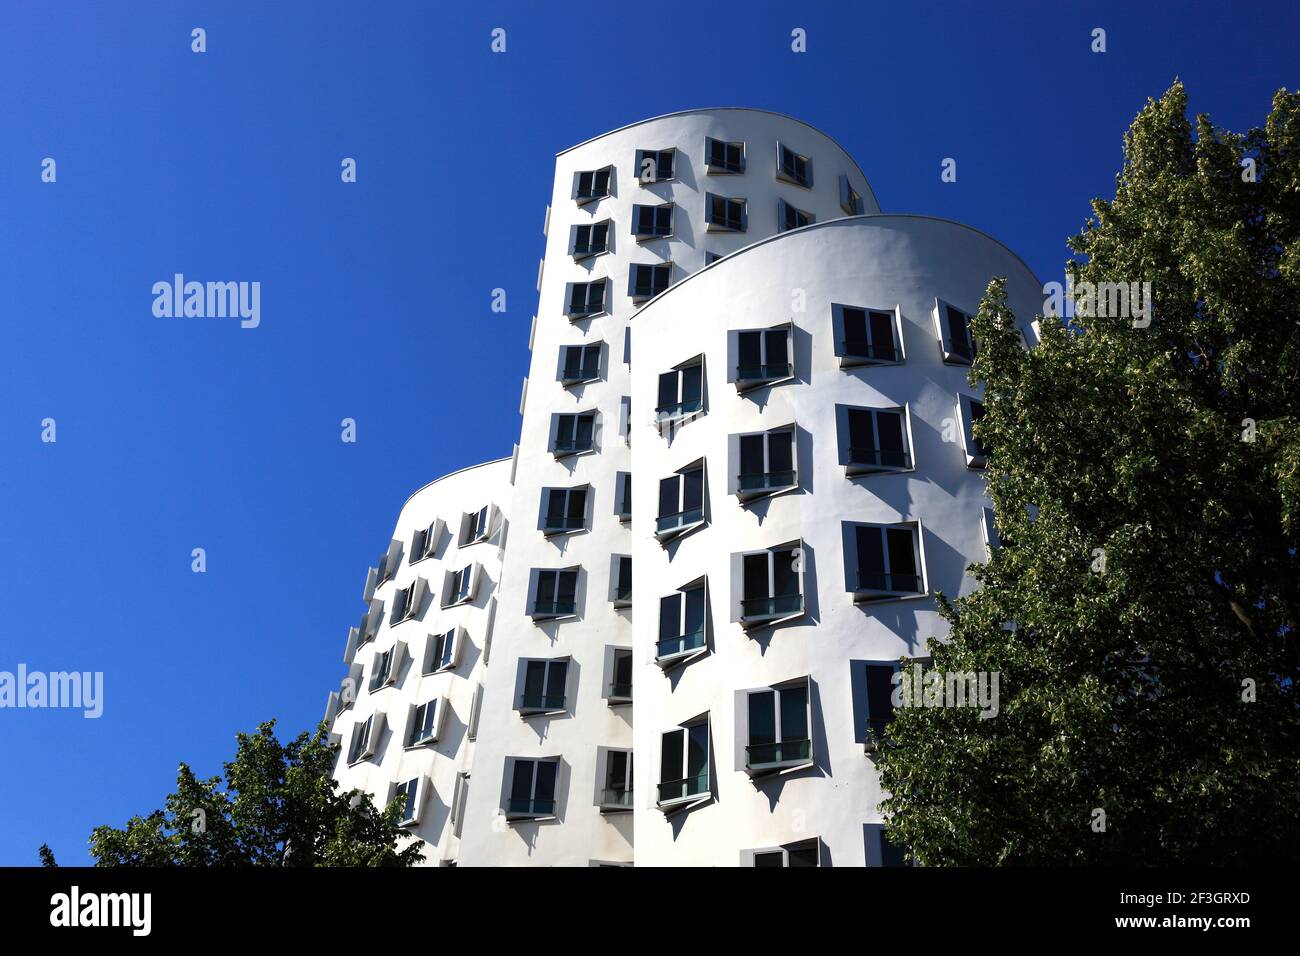 Neuer Zollhof im Medienhafen, Gehry-Bauten, Architekt Frank Gehry, Düsseldorf, Nordrhein-Westfalen, Deutschland Stock Photo